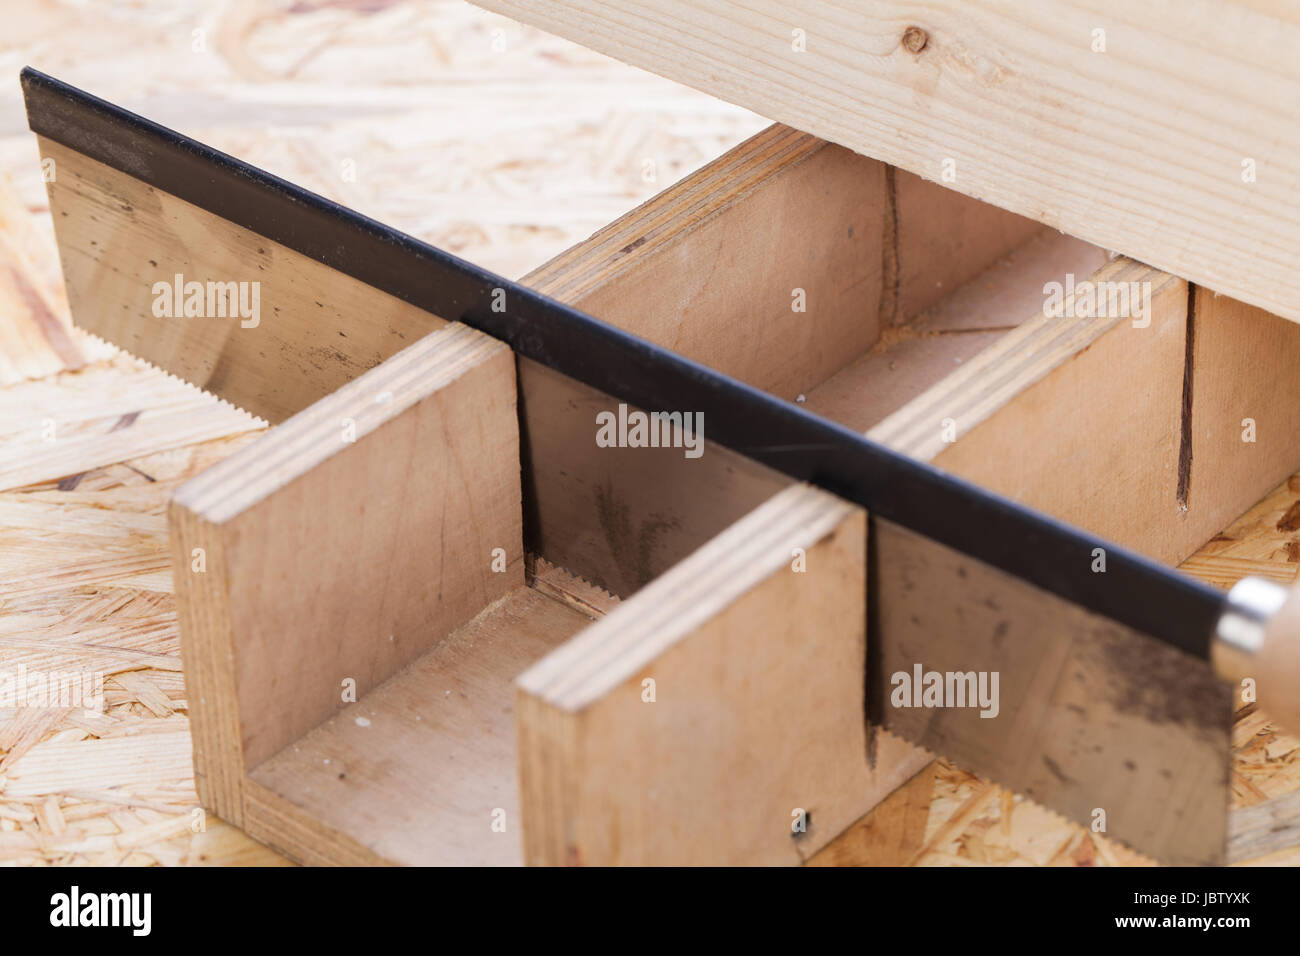 Holz mit Winkelschneider und Säge in einer Werkstatt nahaufnahme detail Stock Photo